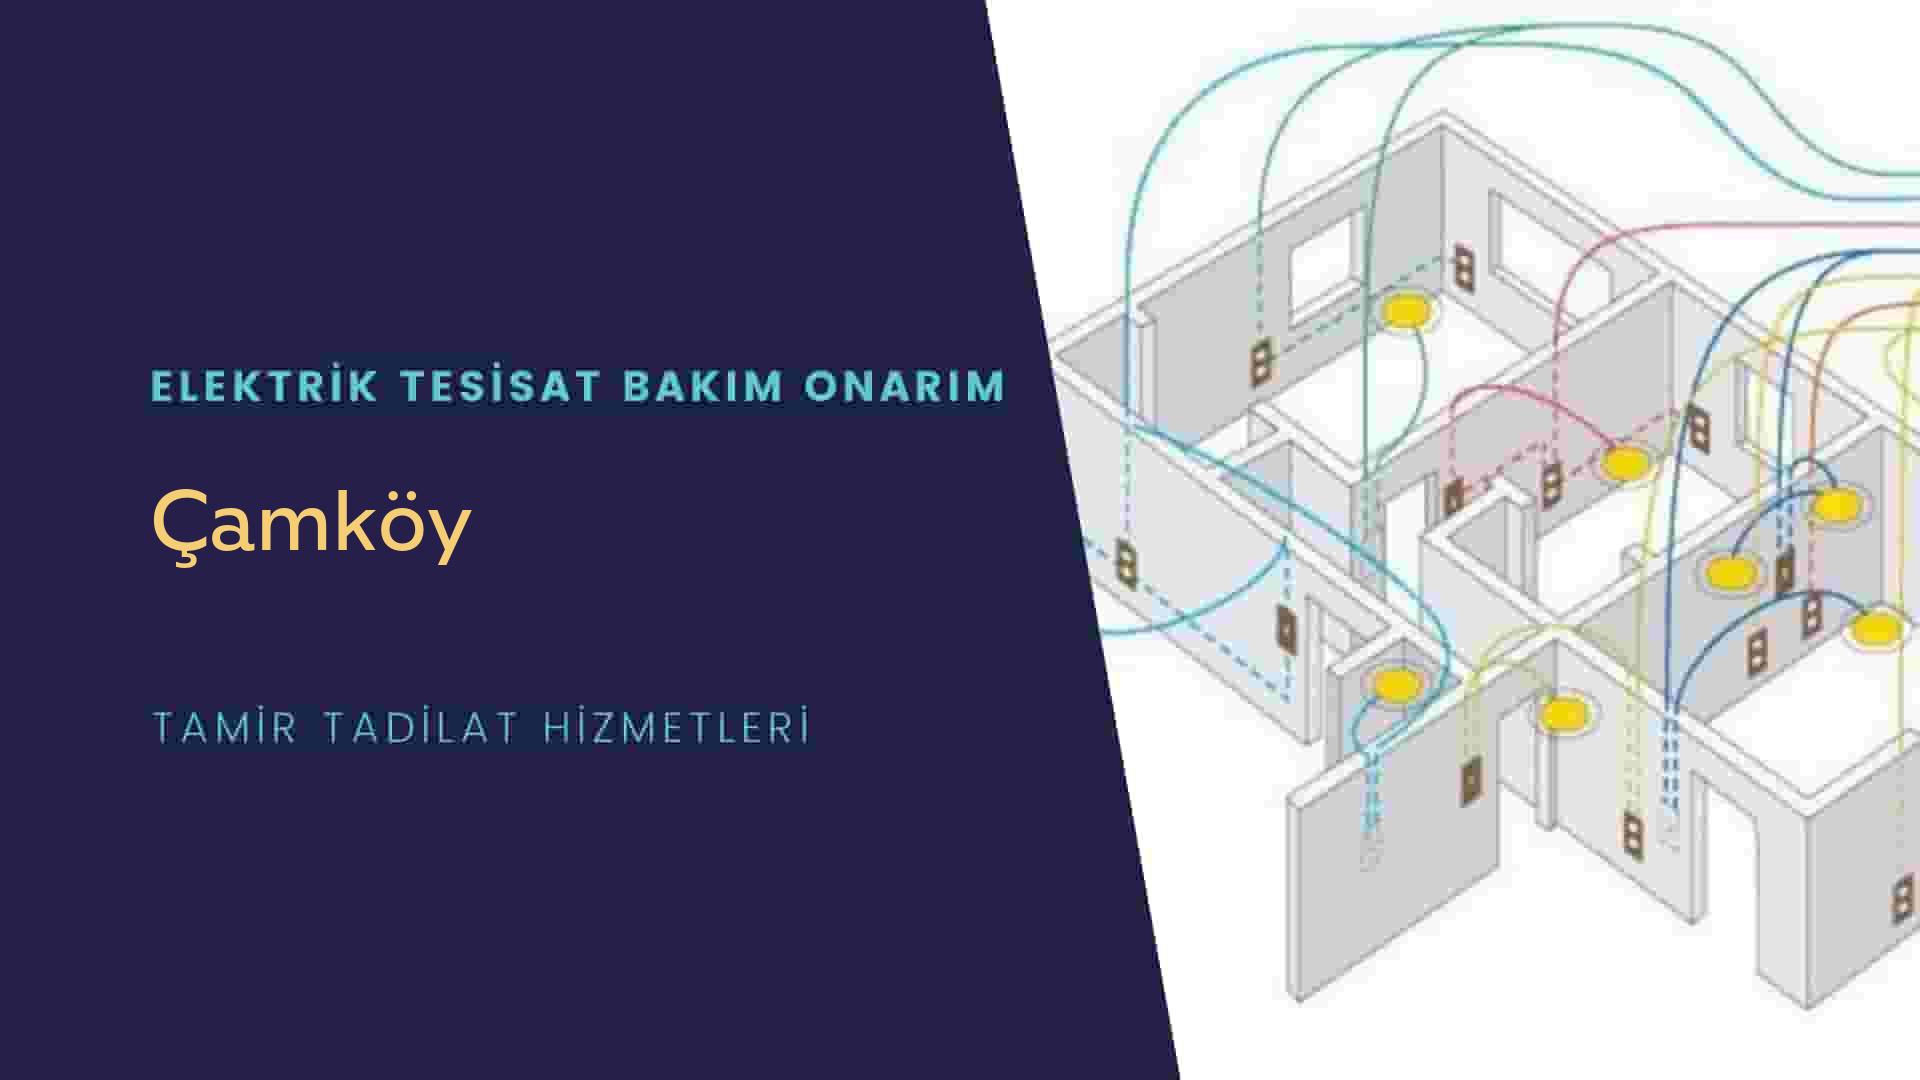 Çamköy'de elektrik tesisatı ustalarımı arıyorsunuz doğru adrestenizi Çamköy elektrik tesisatı ustalarımız 7/24 sizlere hizmet vermekten mutluluk duyar.